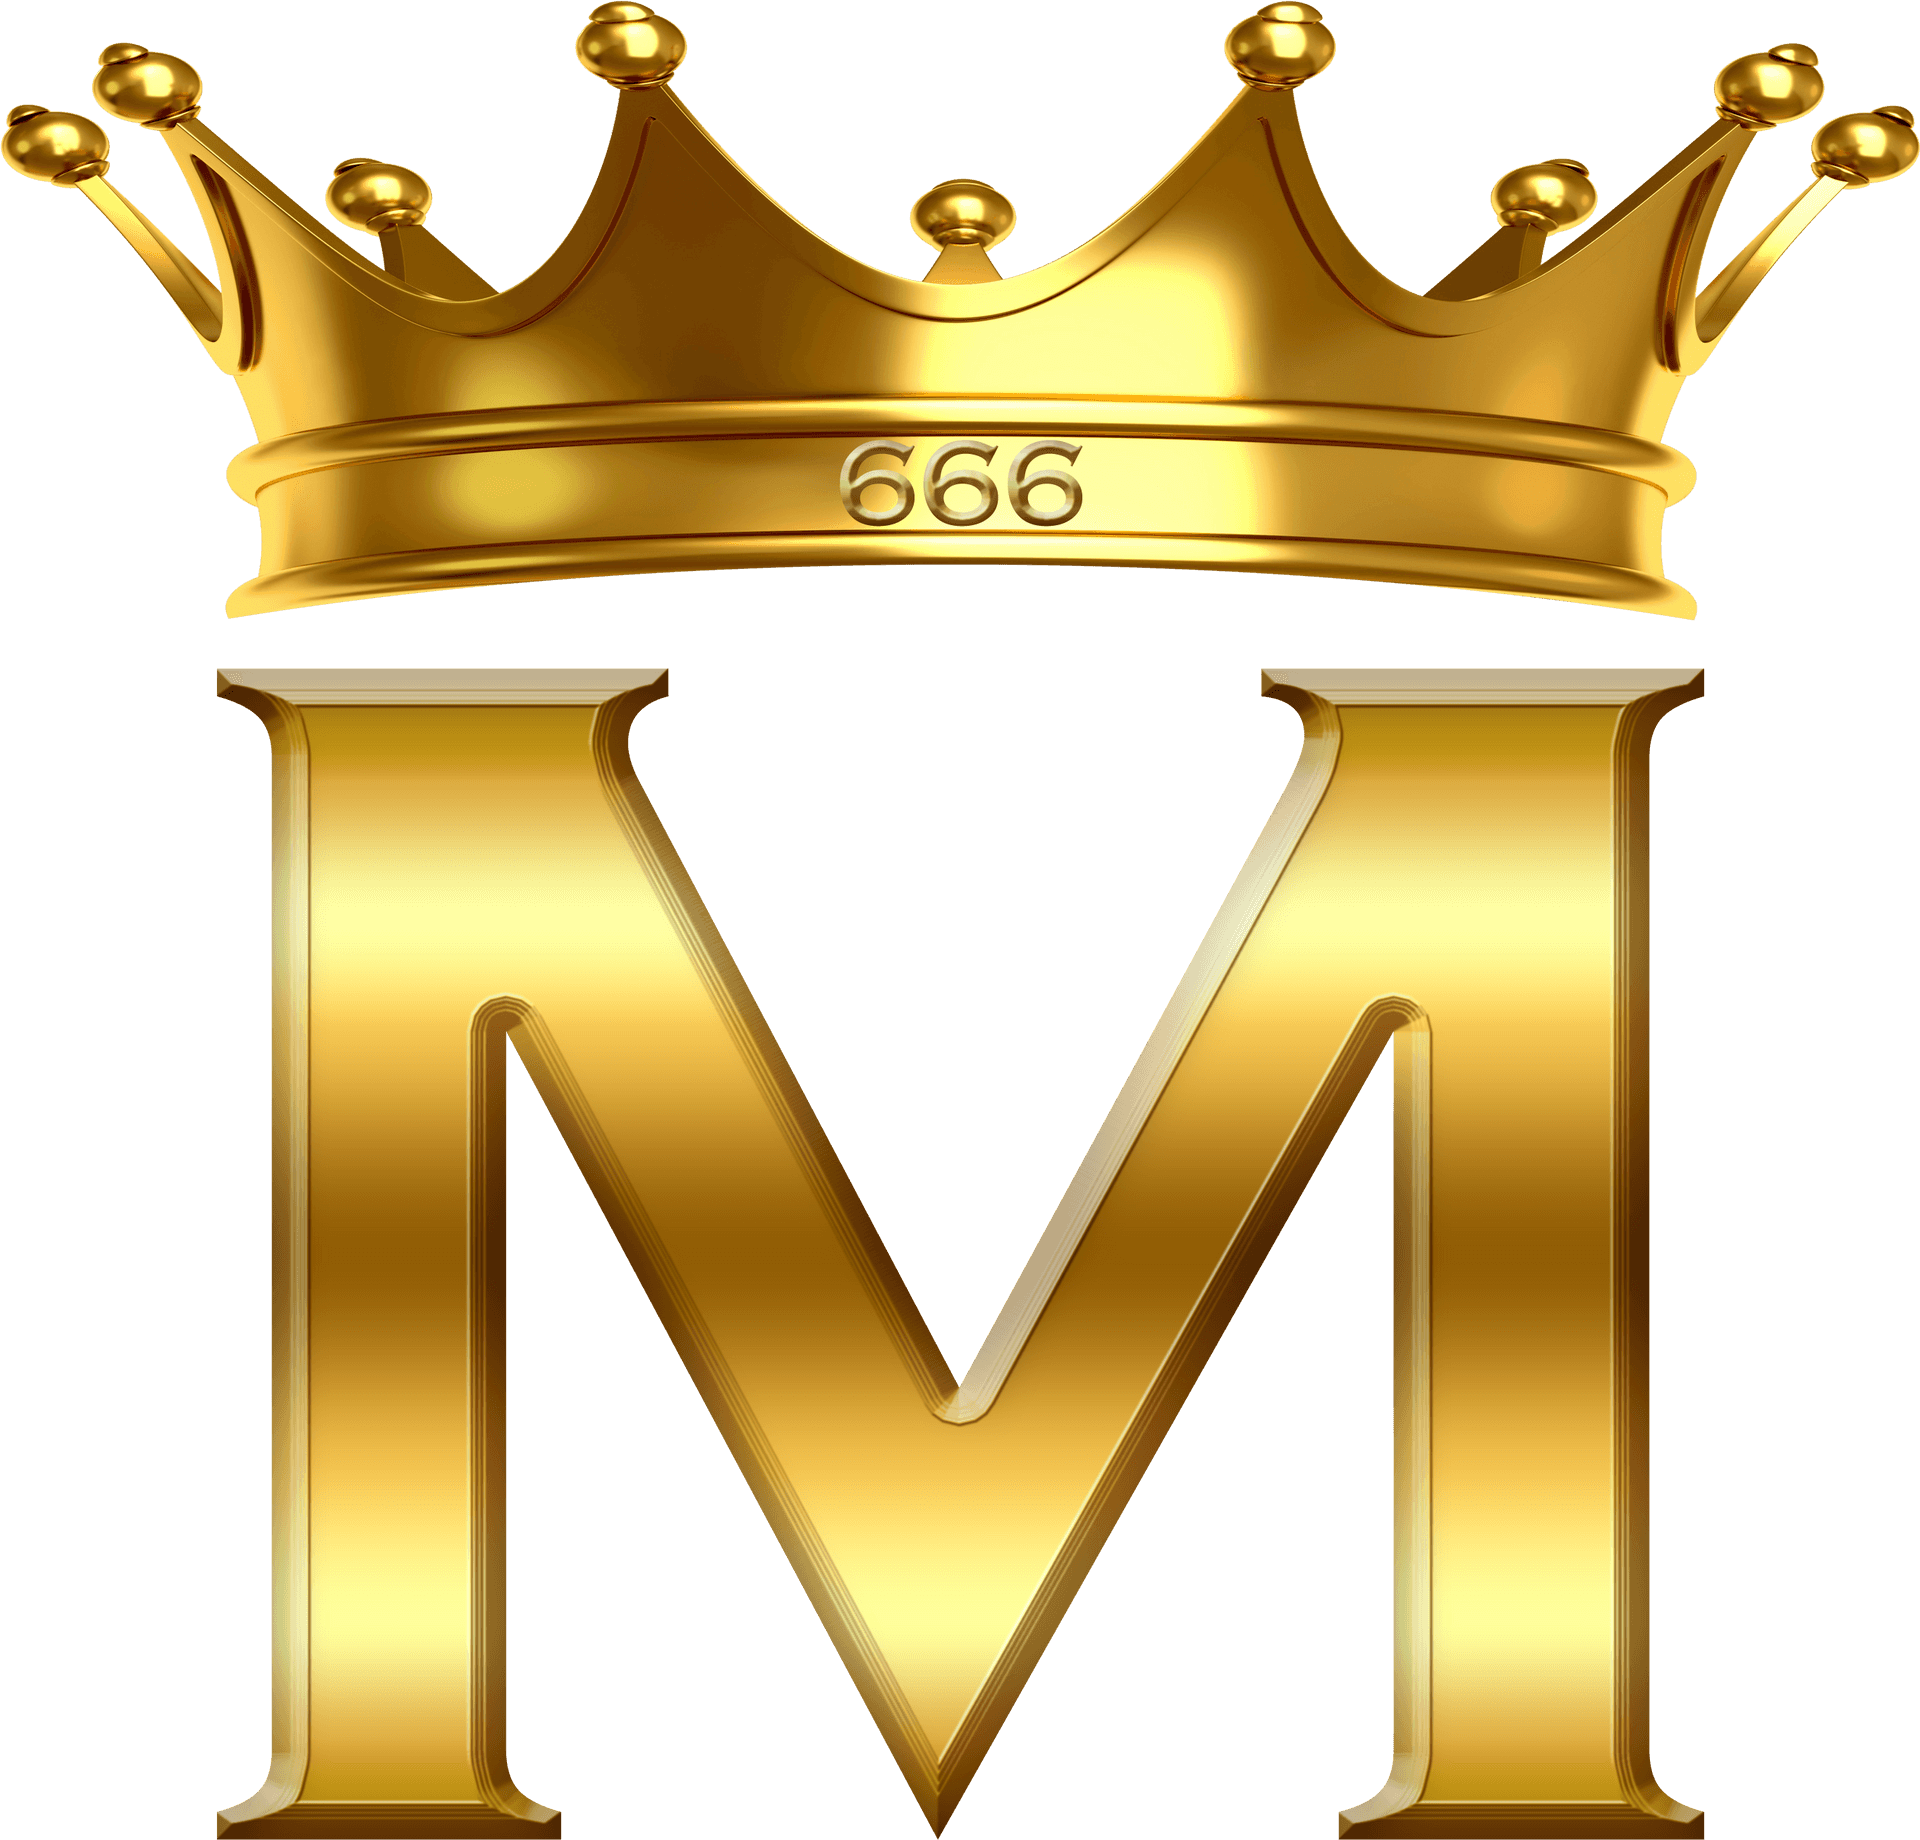 Golden Crowned Letter M666 PNG image